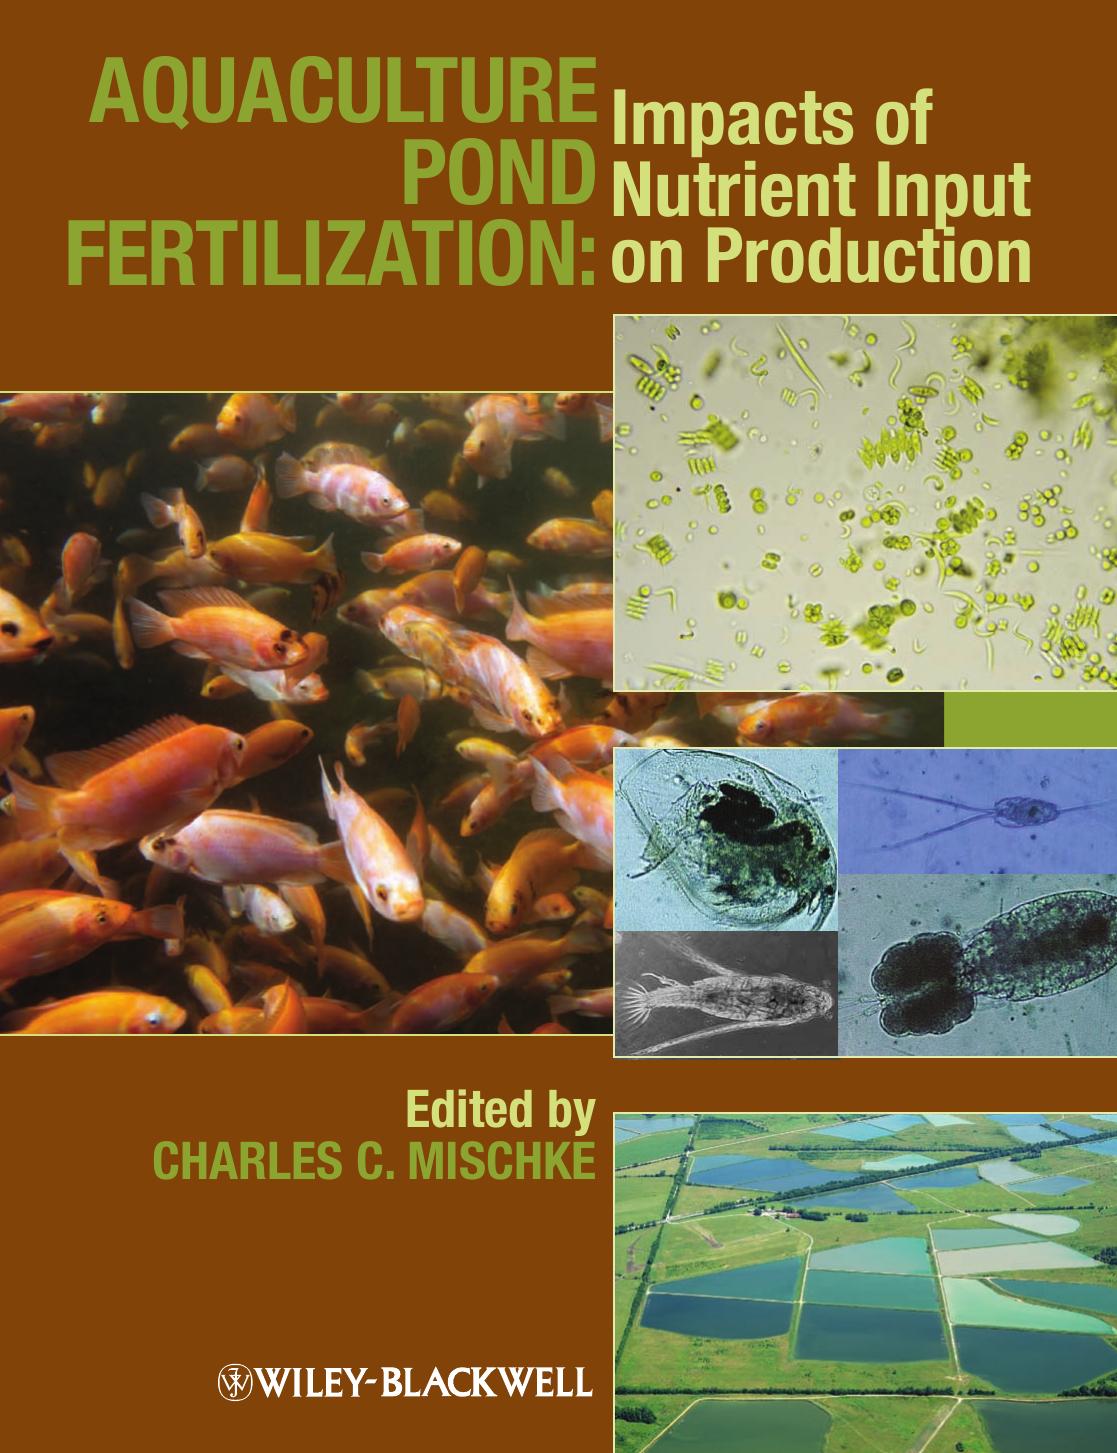 Aquaculture Pond Fertilization : Impacts of Nutrient Input on Production